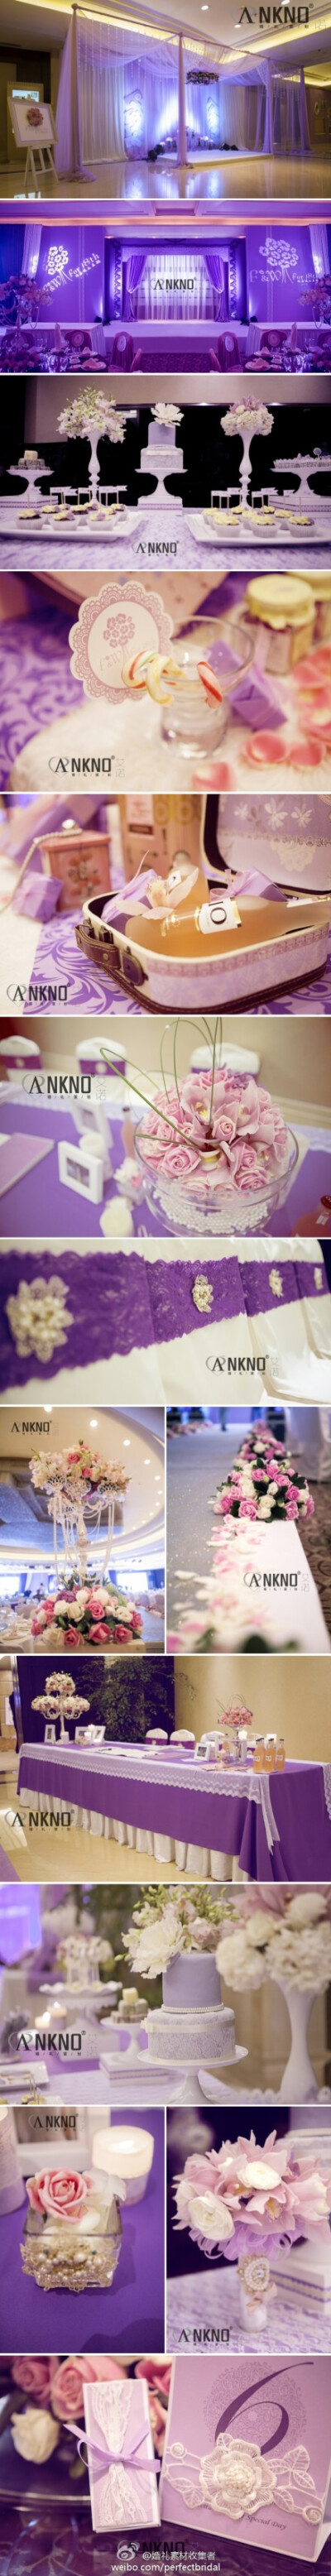 【粉紫色的甜美婚礼】蕾丝、珍珠、粉粉嫩嫩的紫色，每个女孩应该都抵不住这种精致和甜美。